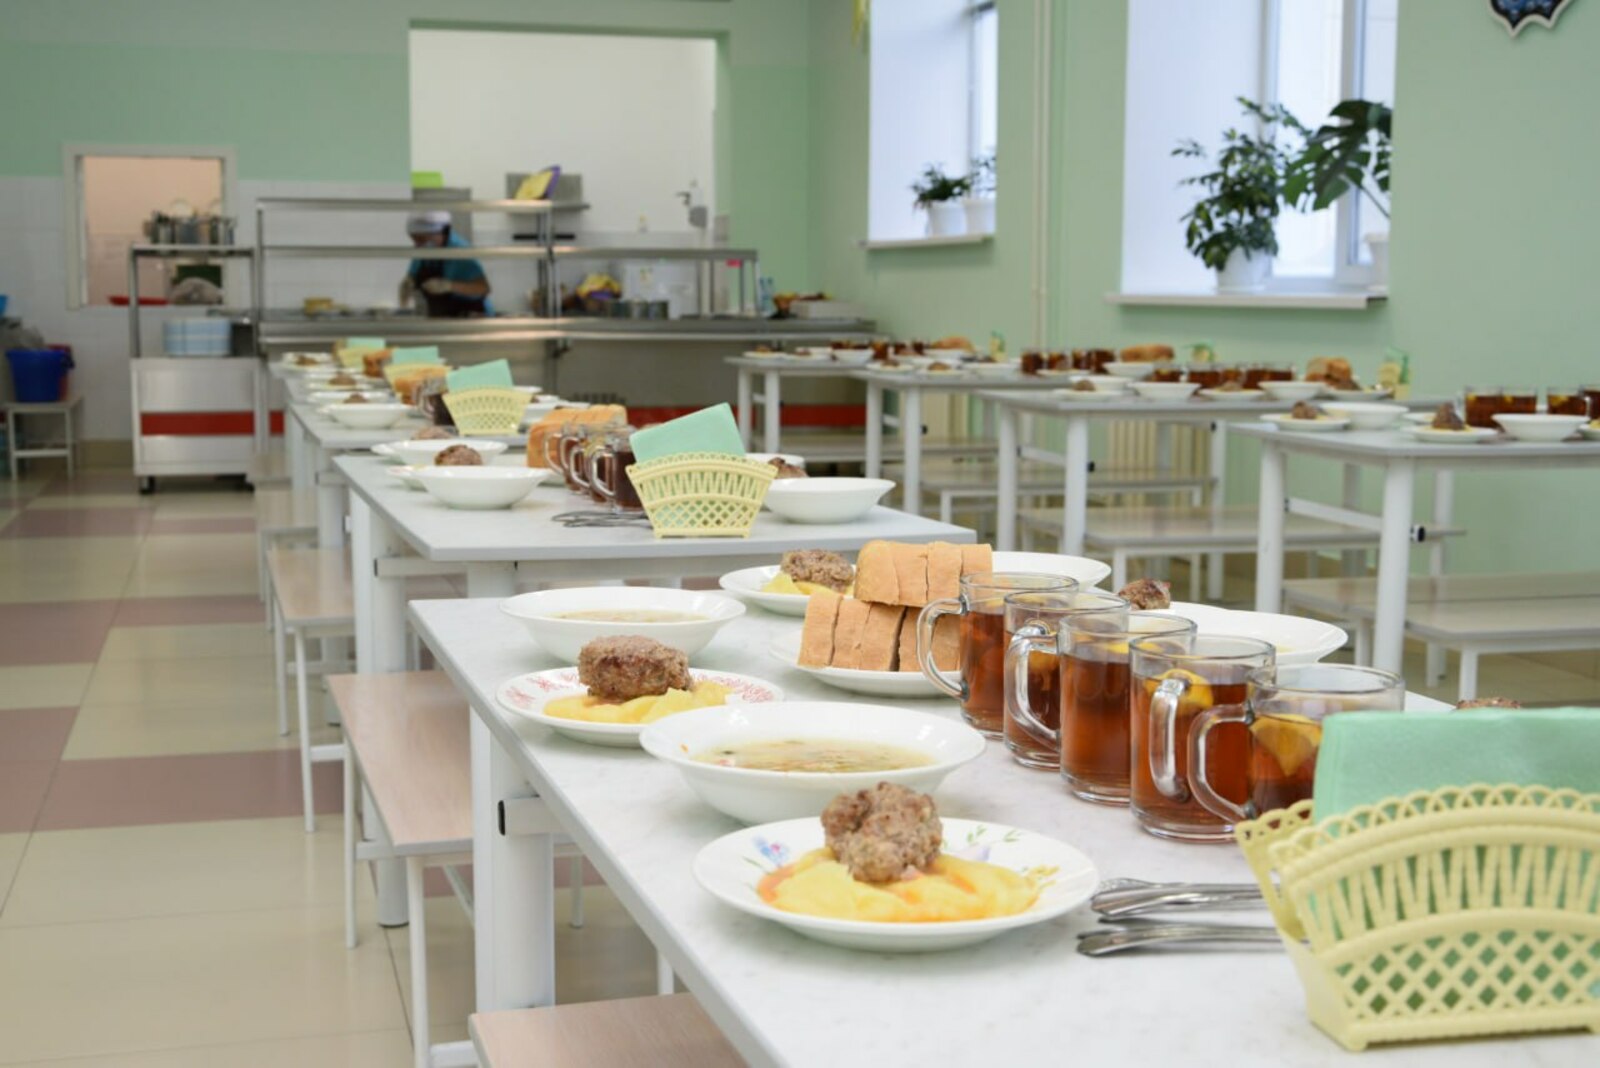 Общественная палата Башкирии начинает анонимный опрос о качестве бесплатного питания и безопасности в школах.